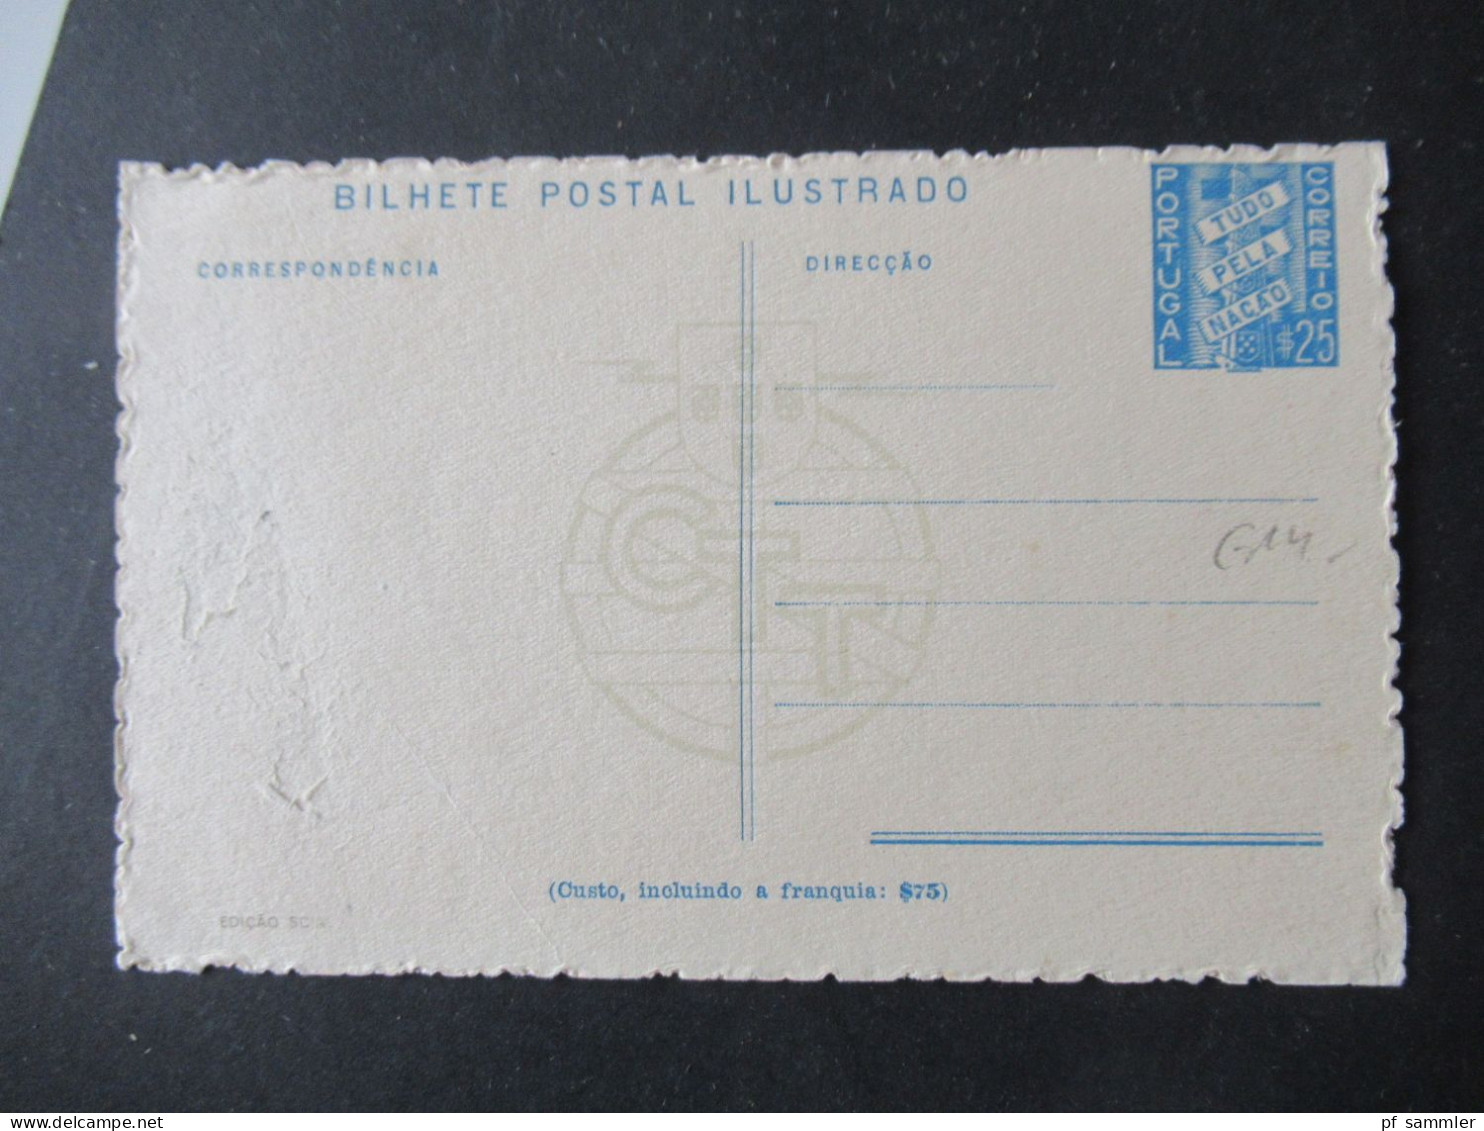 Portugal 1937 Bild Ganzsachen Bilhete Postal Ilustrado Edicao Scial / CTT / 3 Verschiedene Motive / Ugebraucht - Ganzsachen